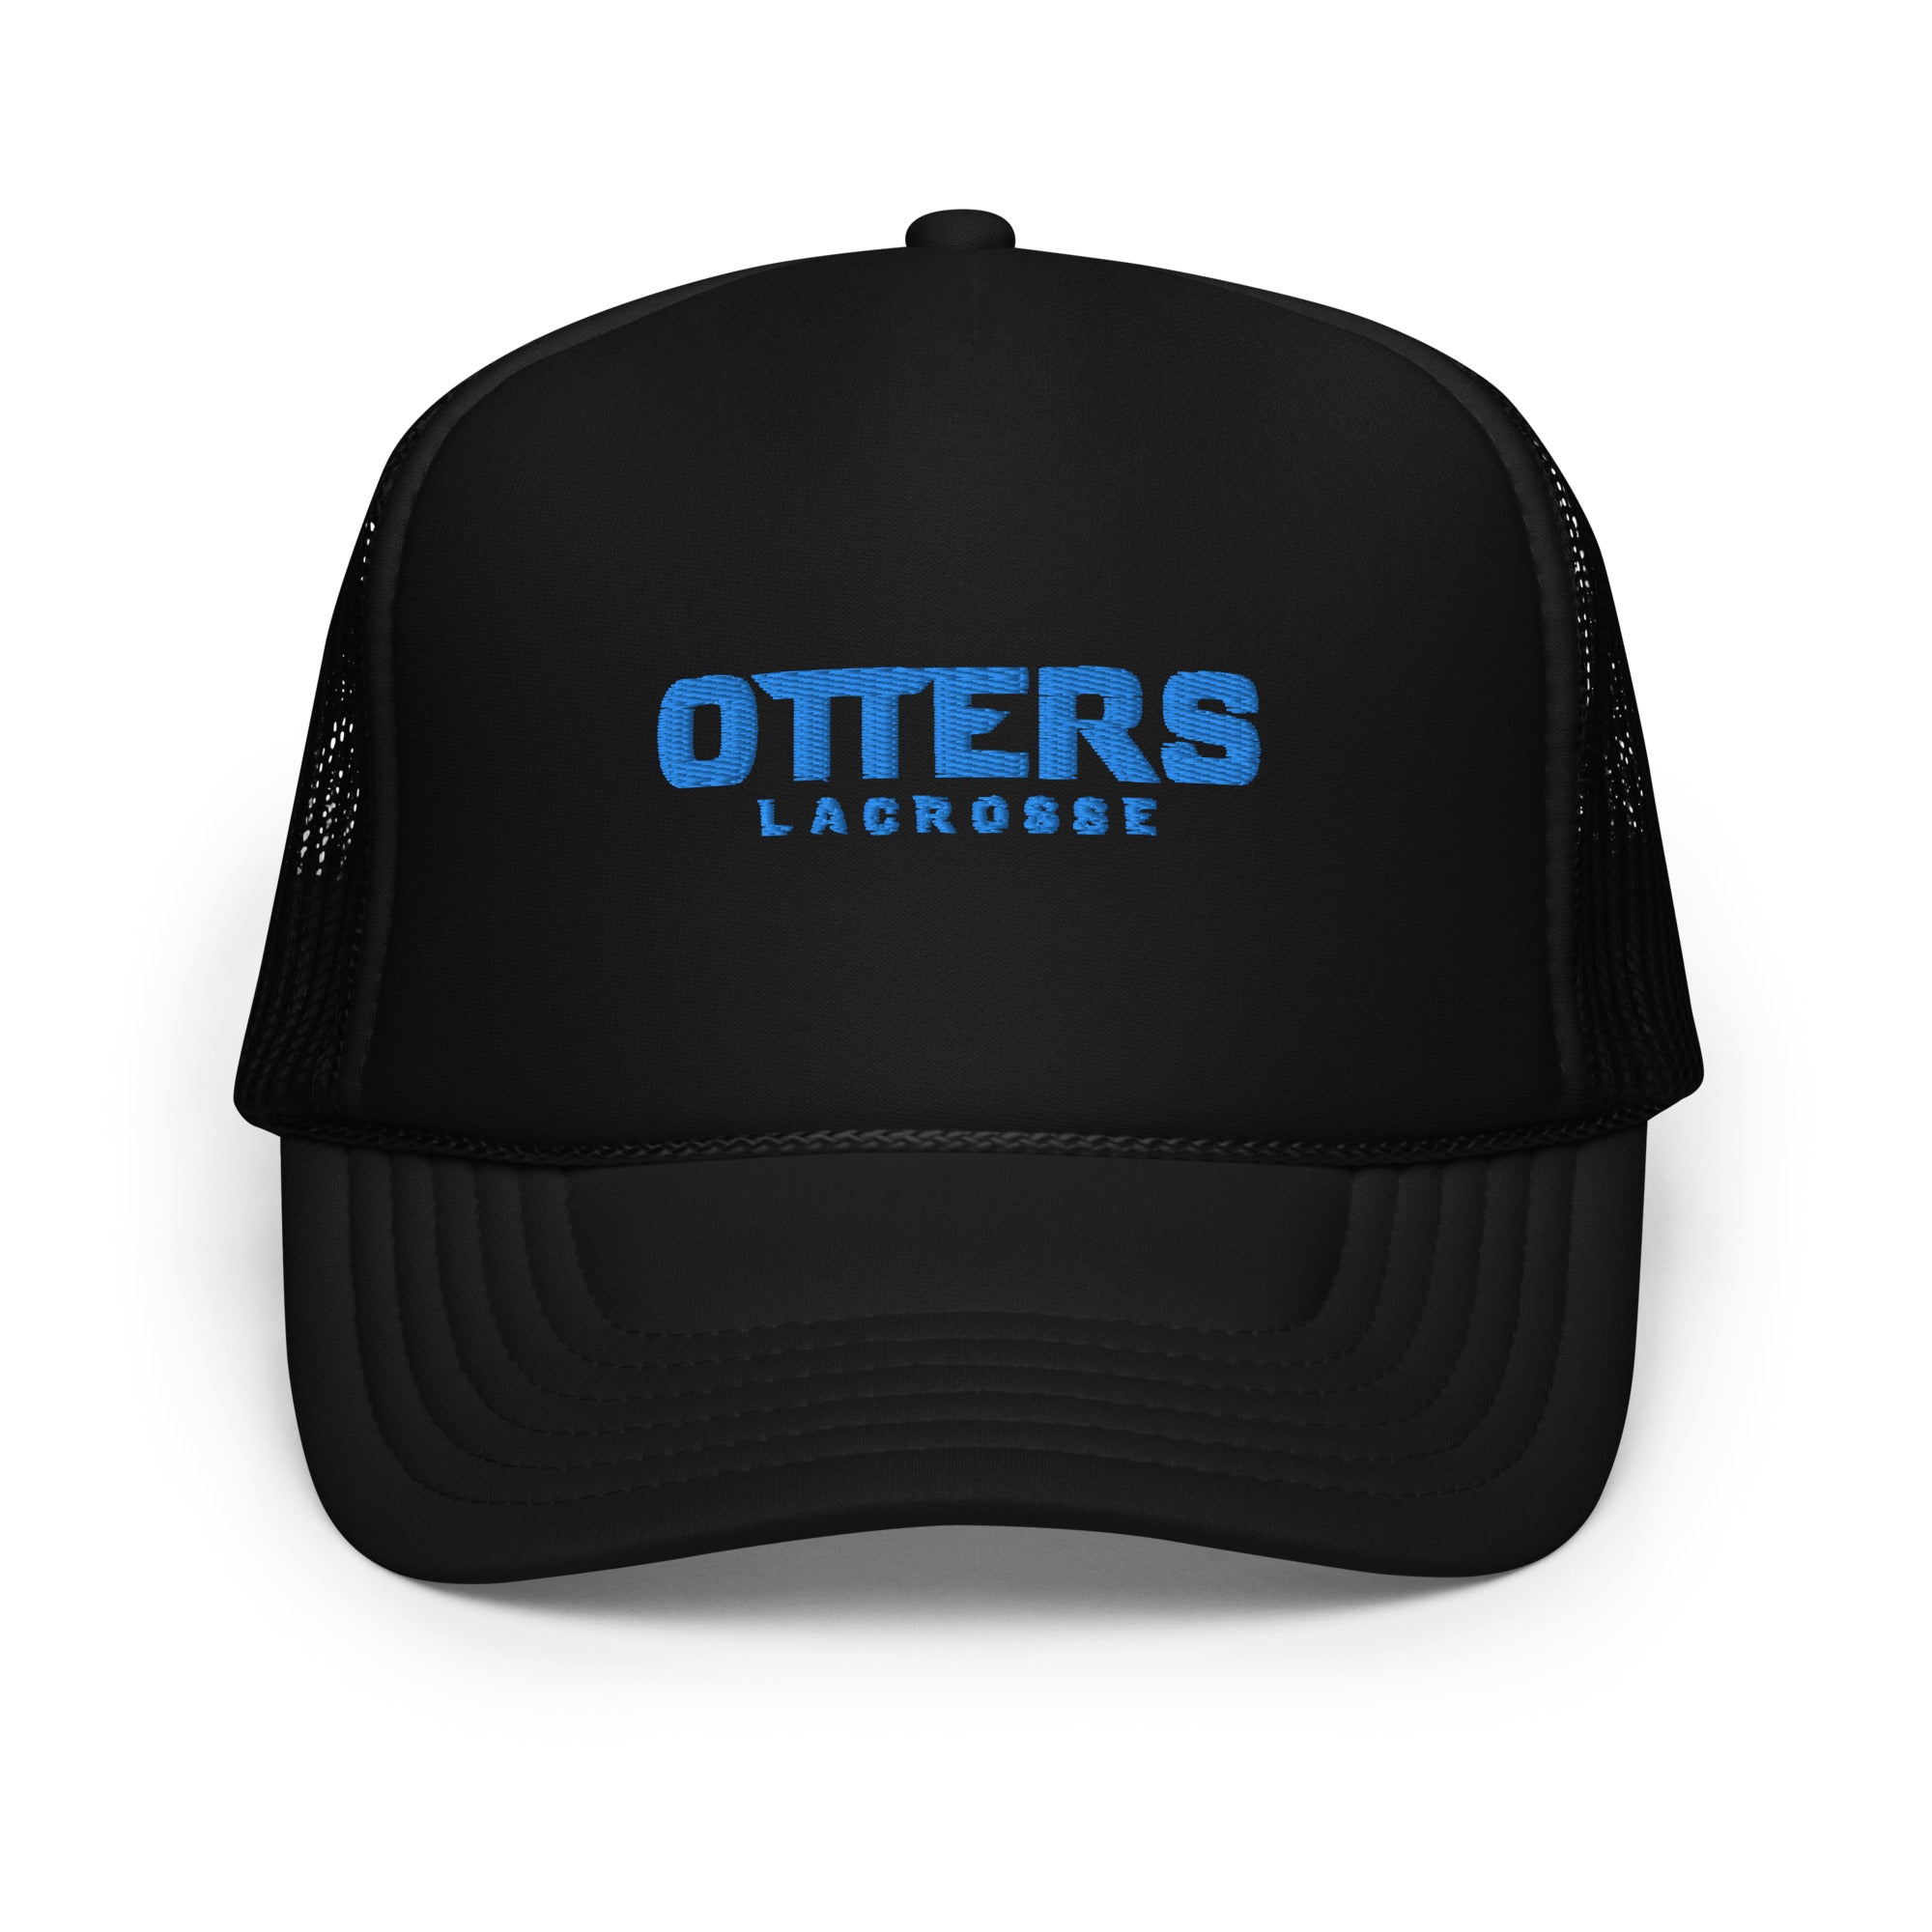 Otters Foam trucker hat